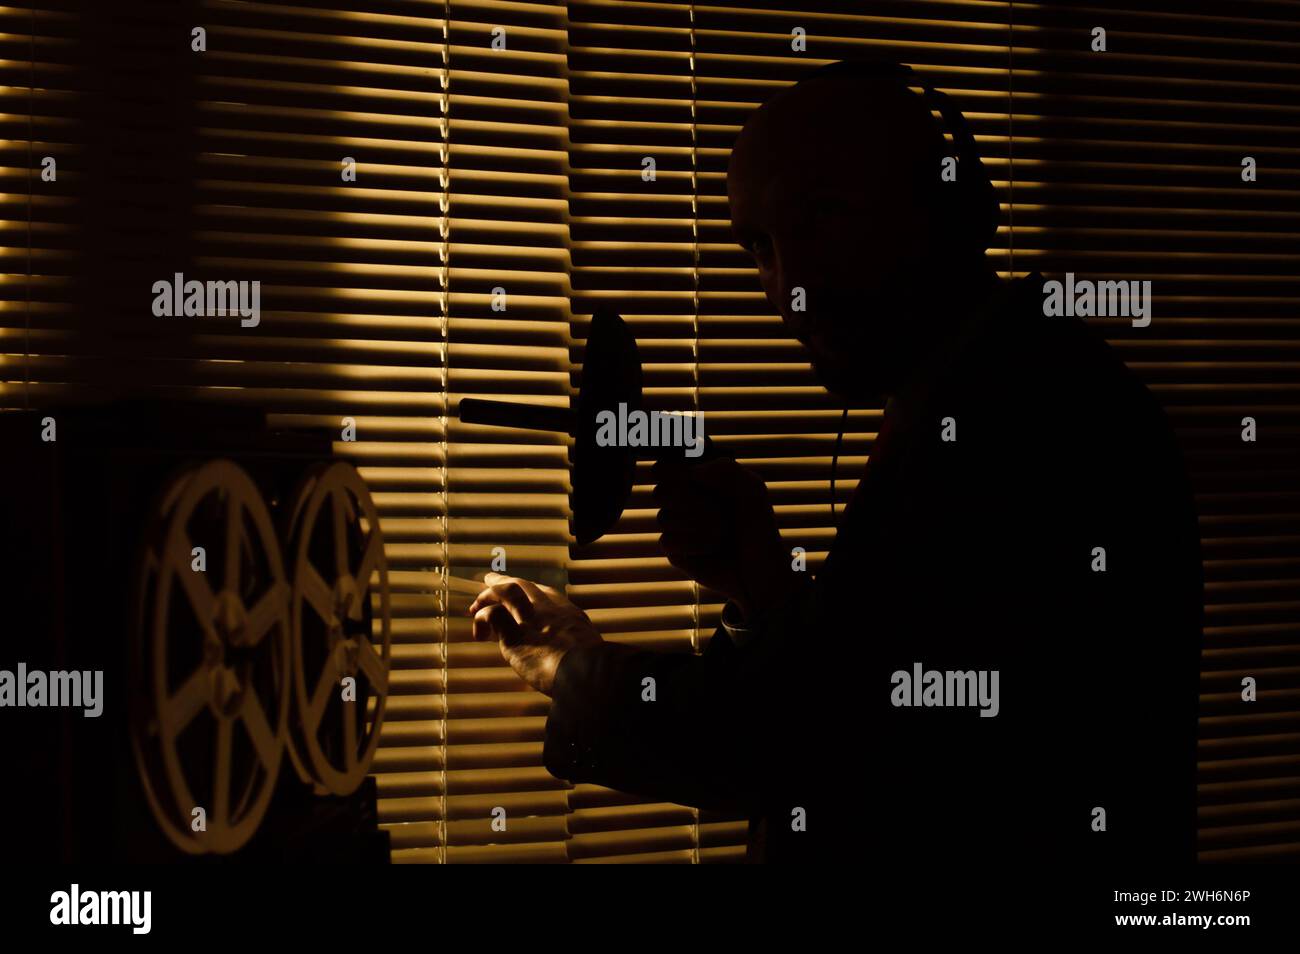 Un agente segreto dell'FBI ascolta con le cuffie e registra una conversazione sullo sfondo di una finestra con persiane, illuminazione di silhouette, selettiva Foto Stock